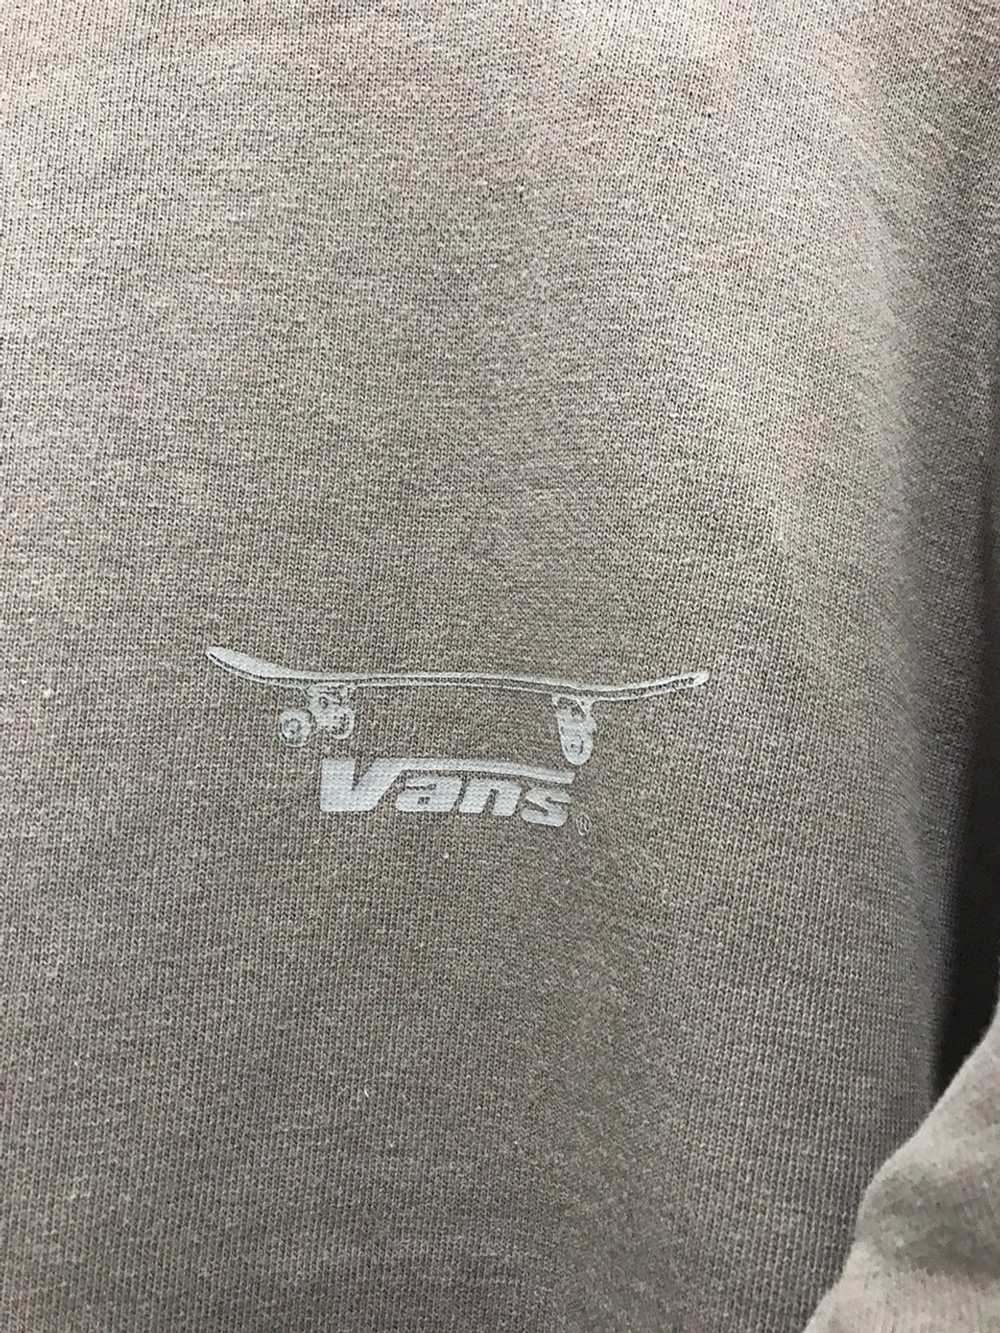 Skategang × Vans × Vintage 🔥Vtg Vans Sweatshirt - image 3